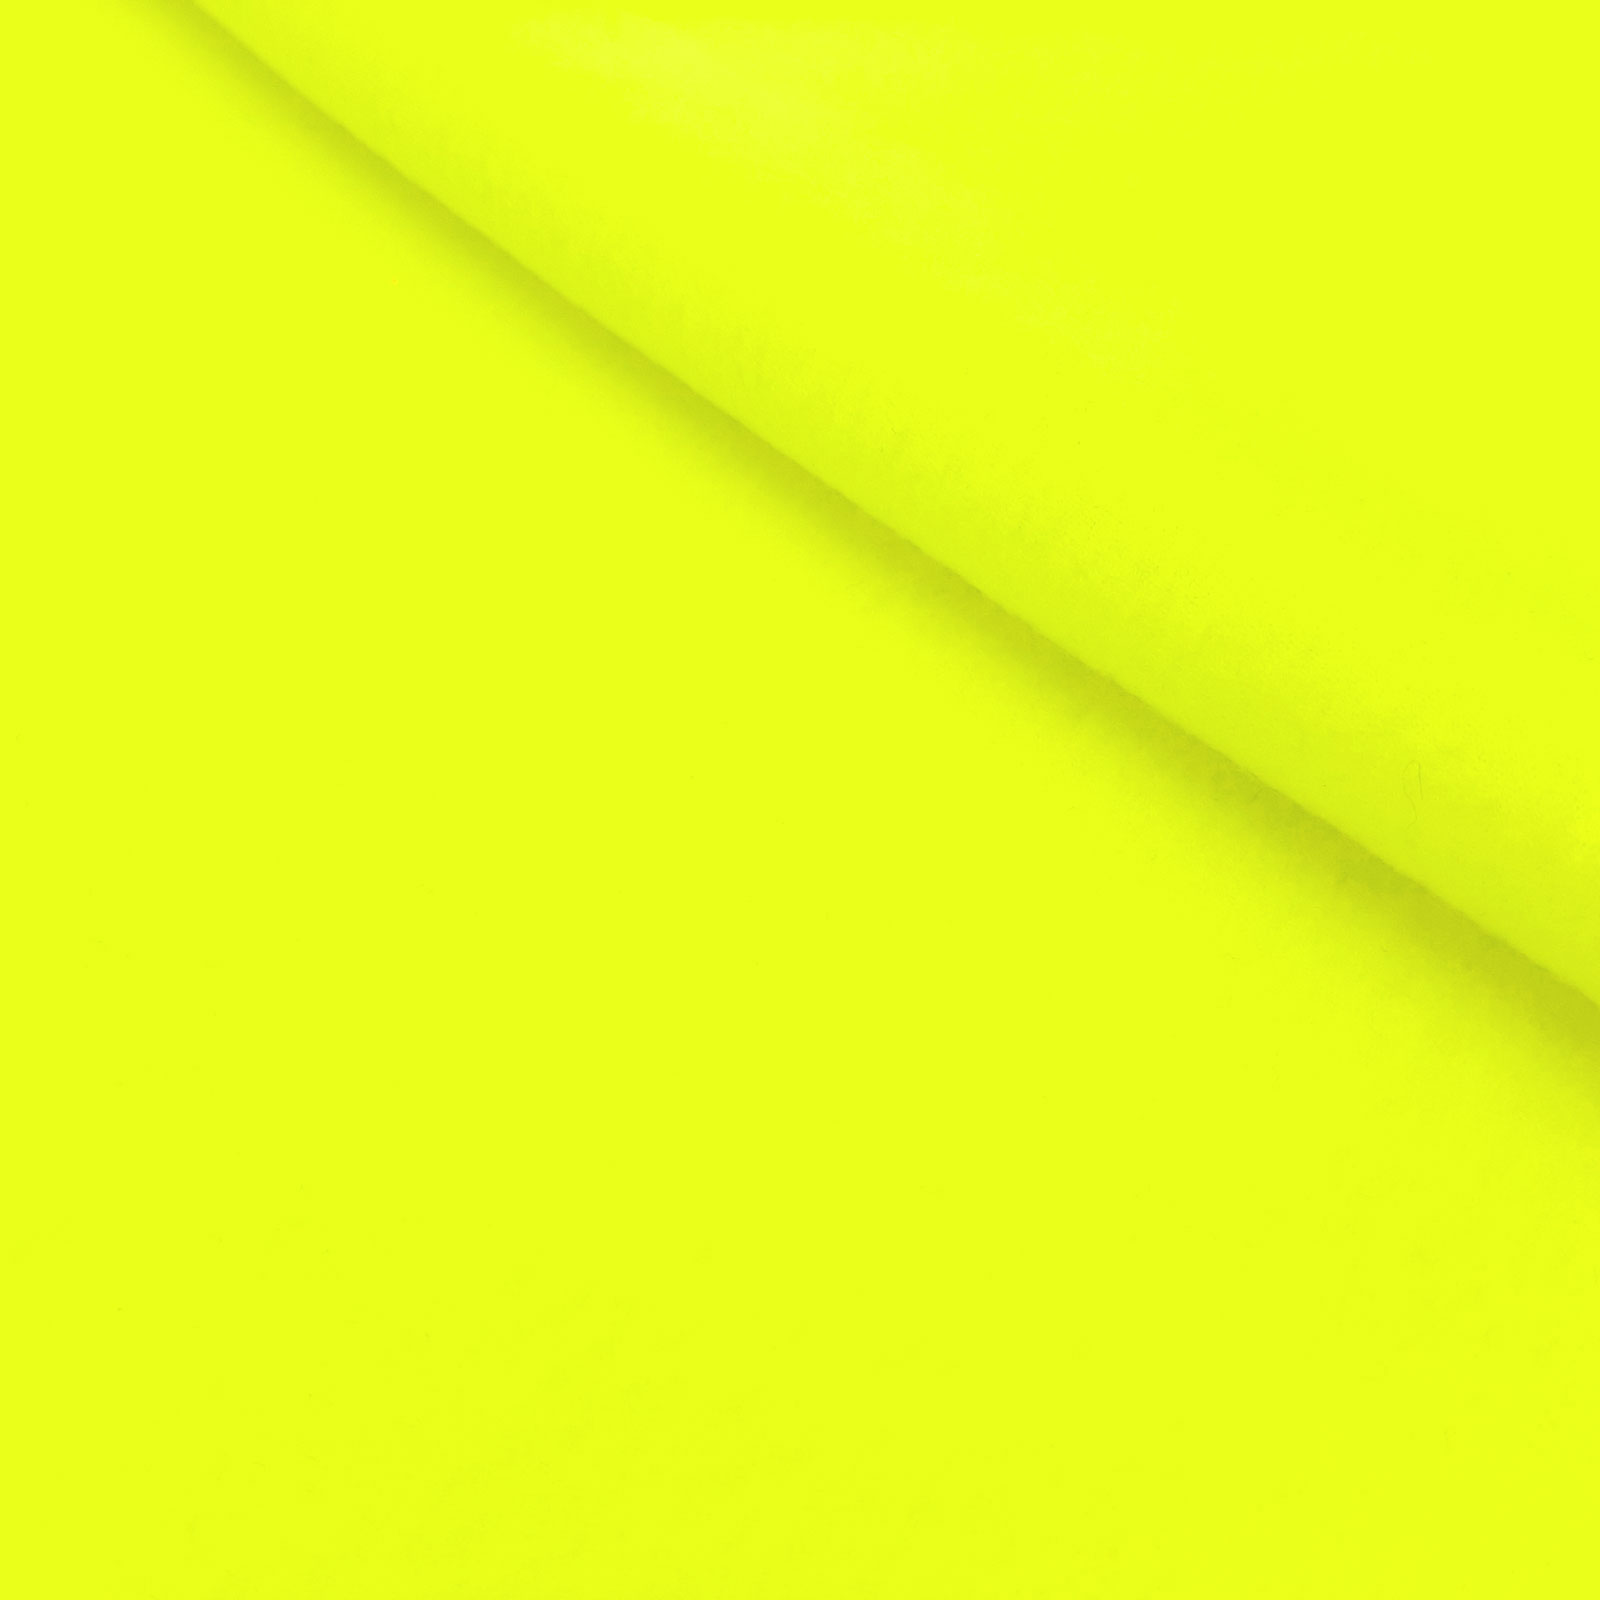 Polarfleece – Forro polar (cores fluorescente) - Amarelo néon